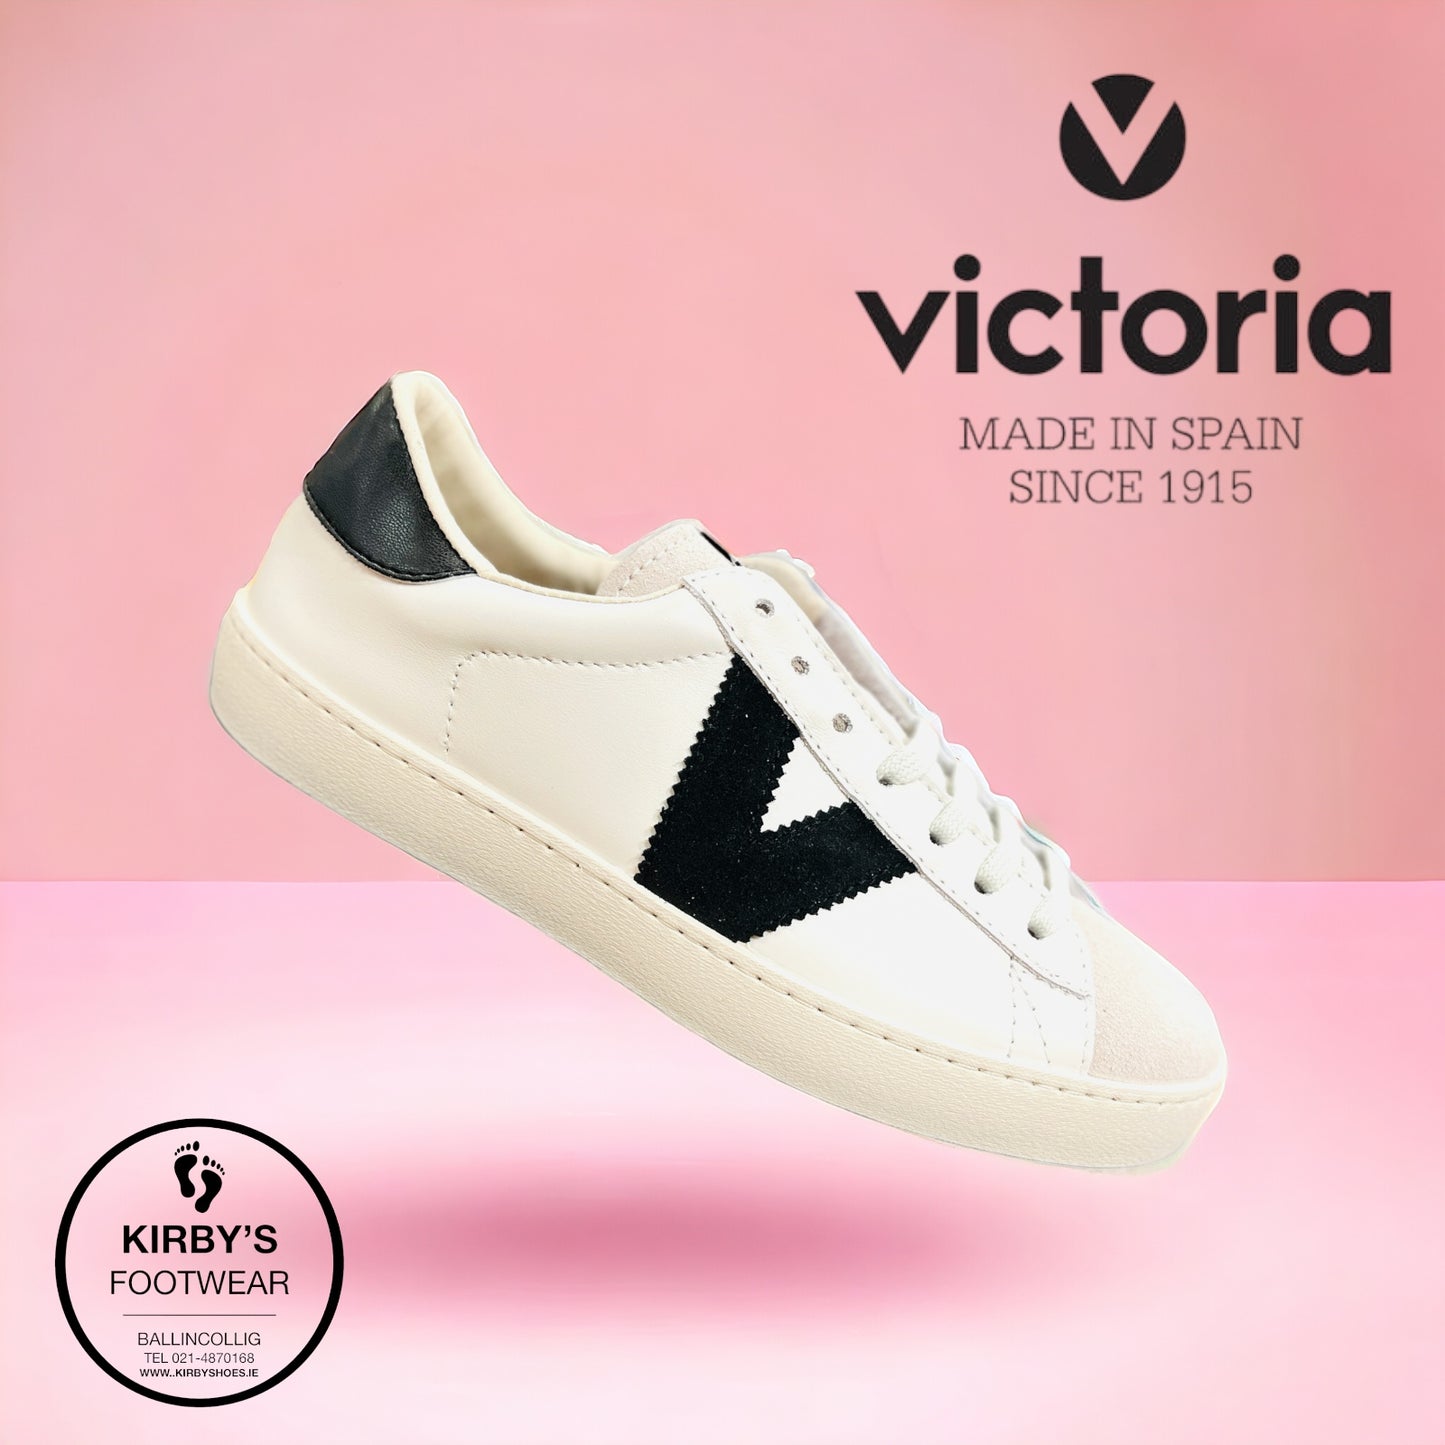 Victoria trainer white black leather - 1125188